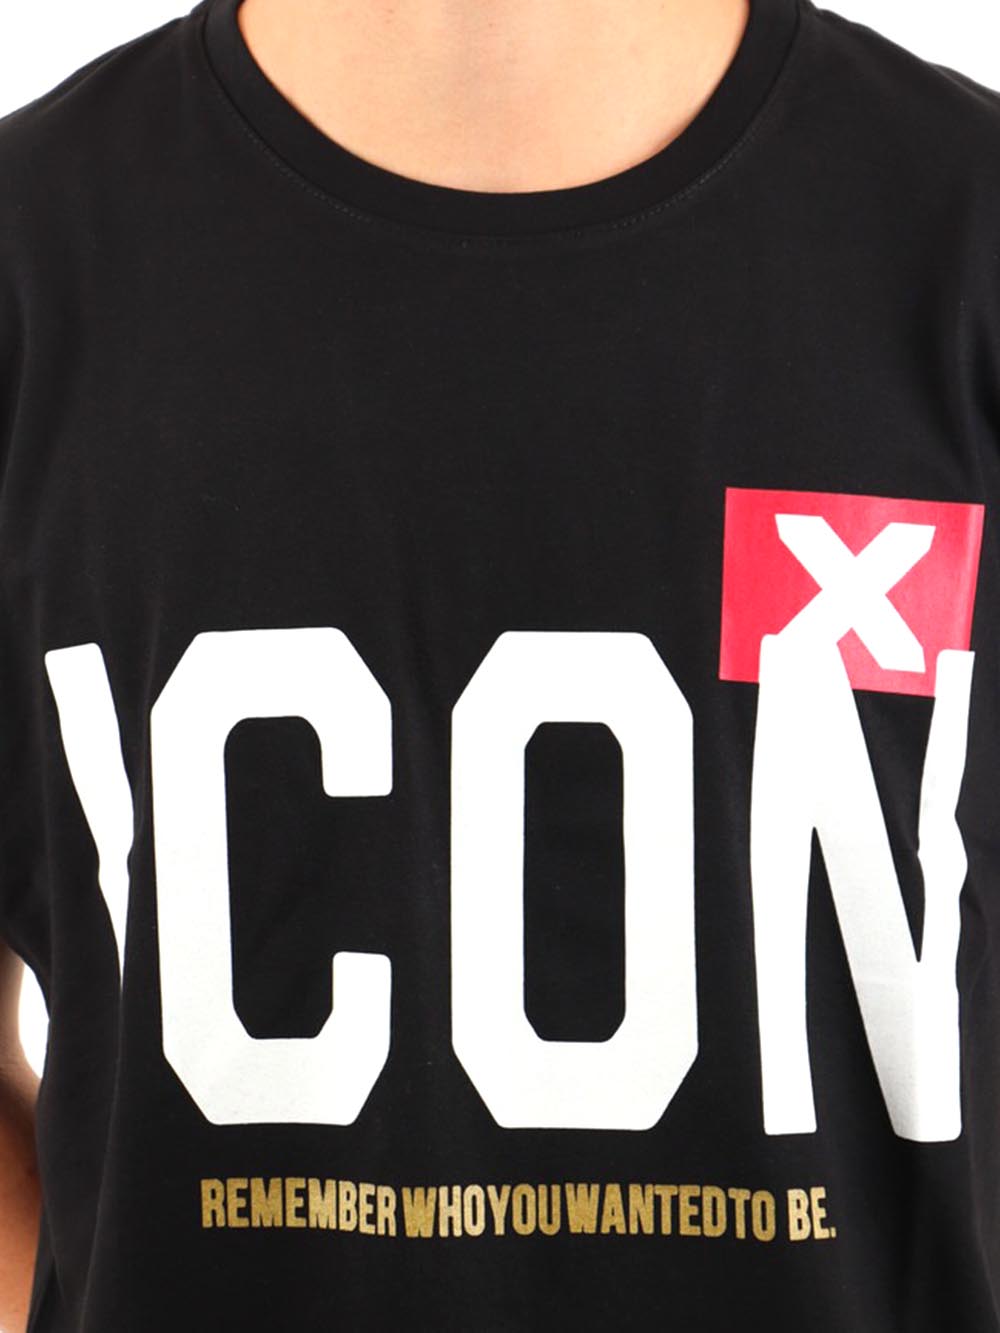 ICON T-shirt Uomo Nero